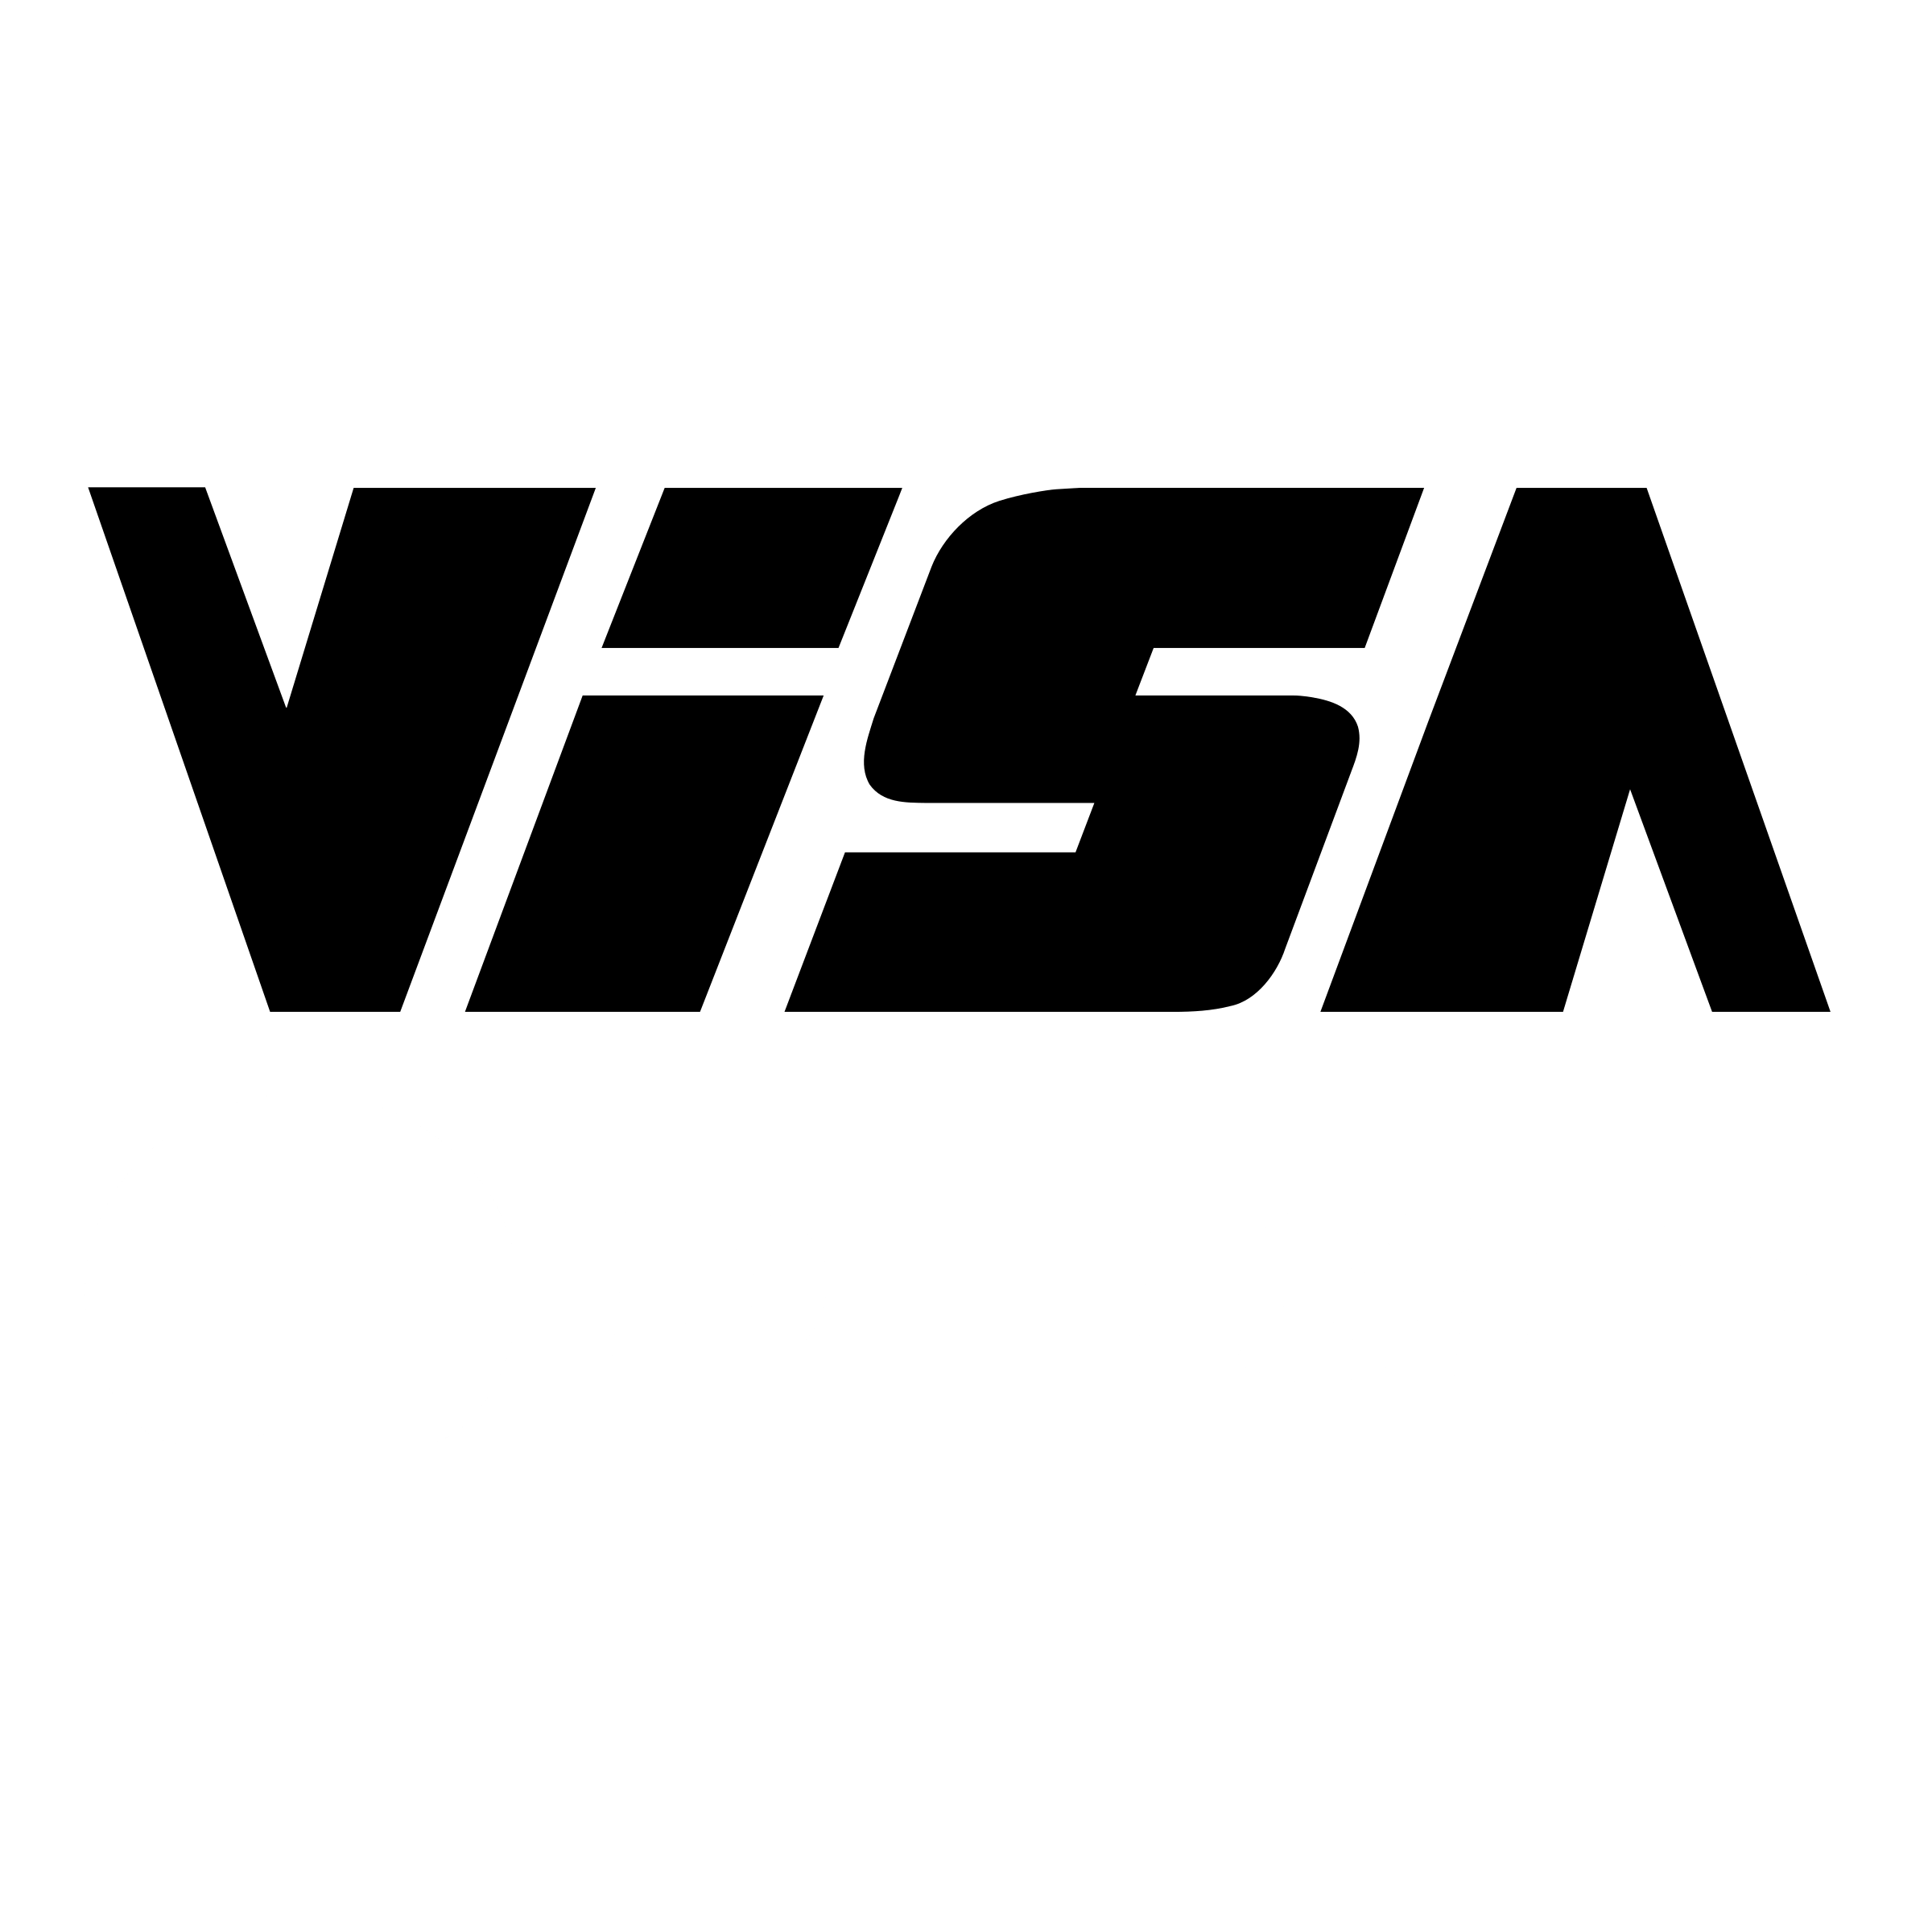 Delsey Logo - Visa Delsey Logo PNG Transparent & SVG Vector